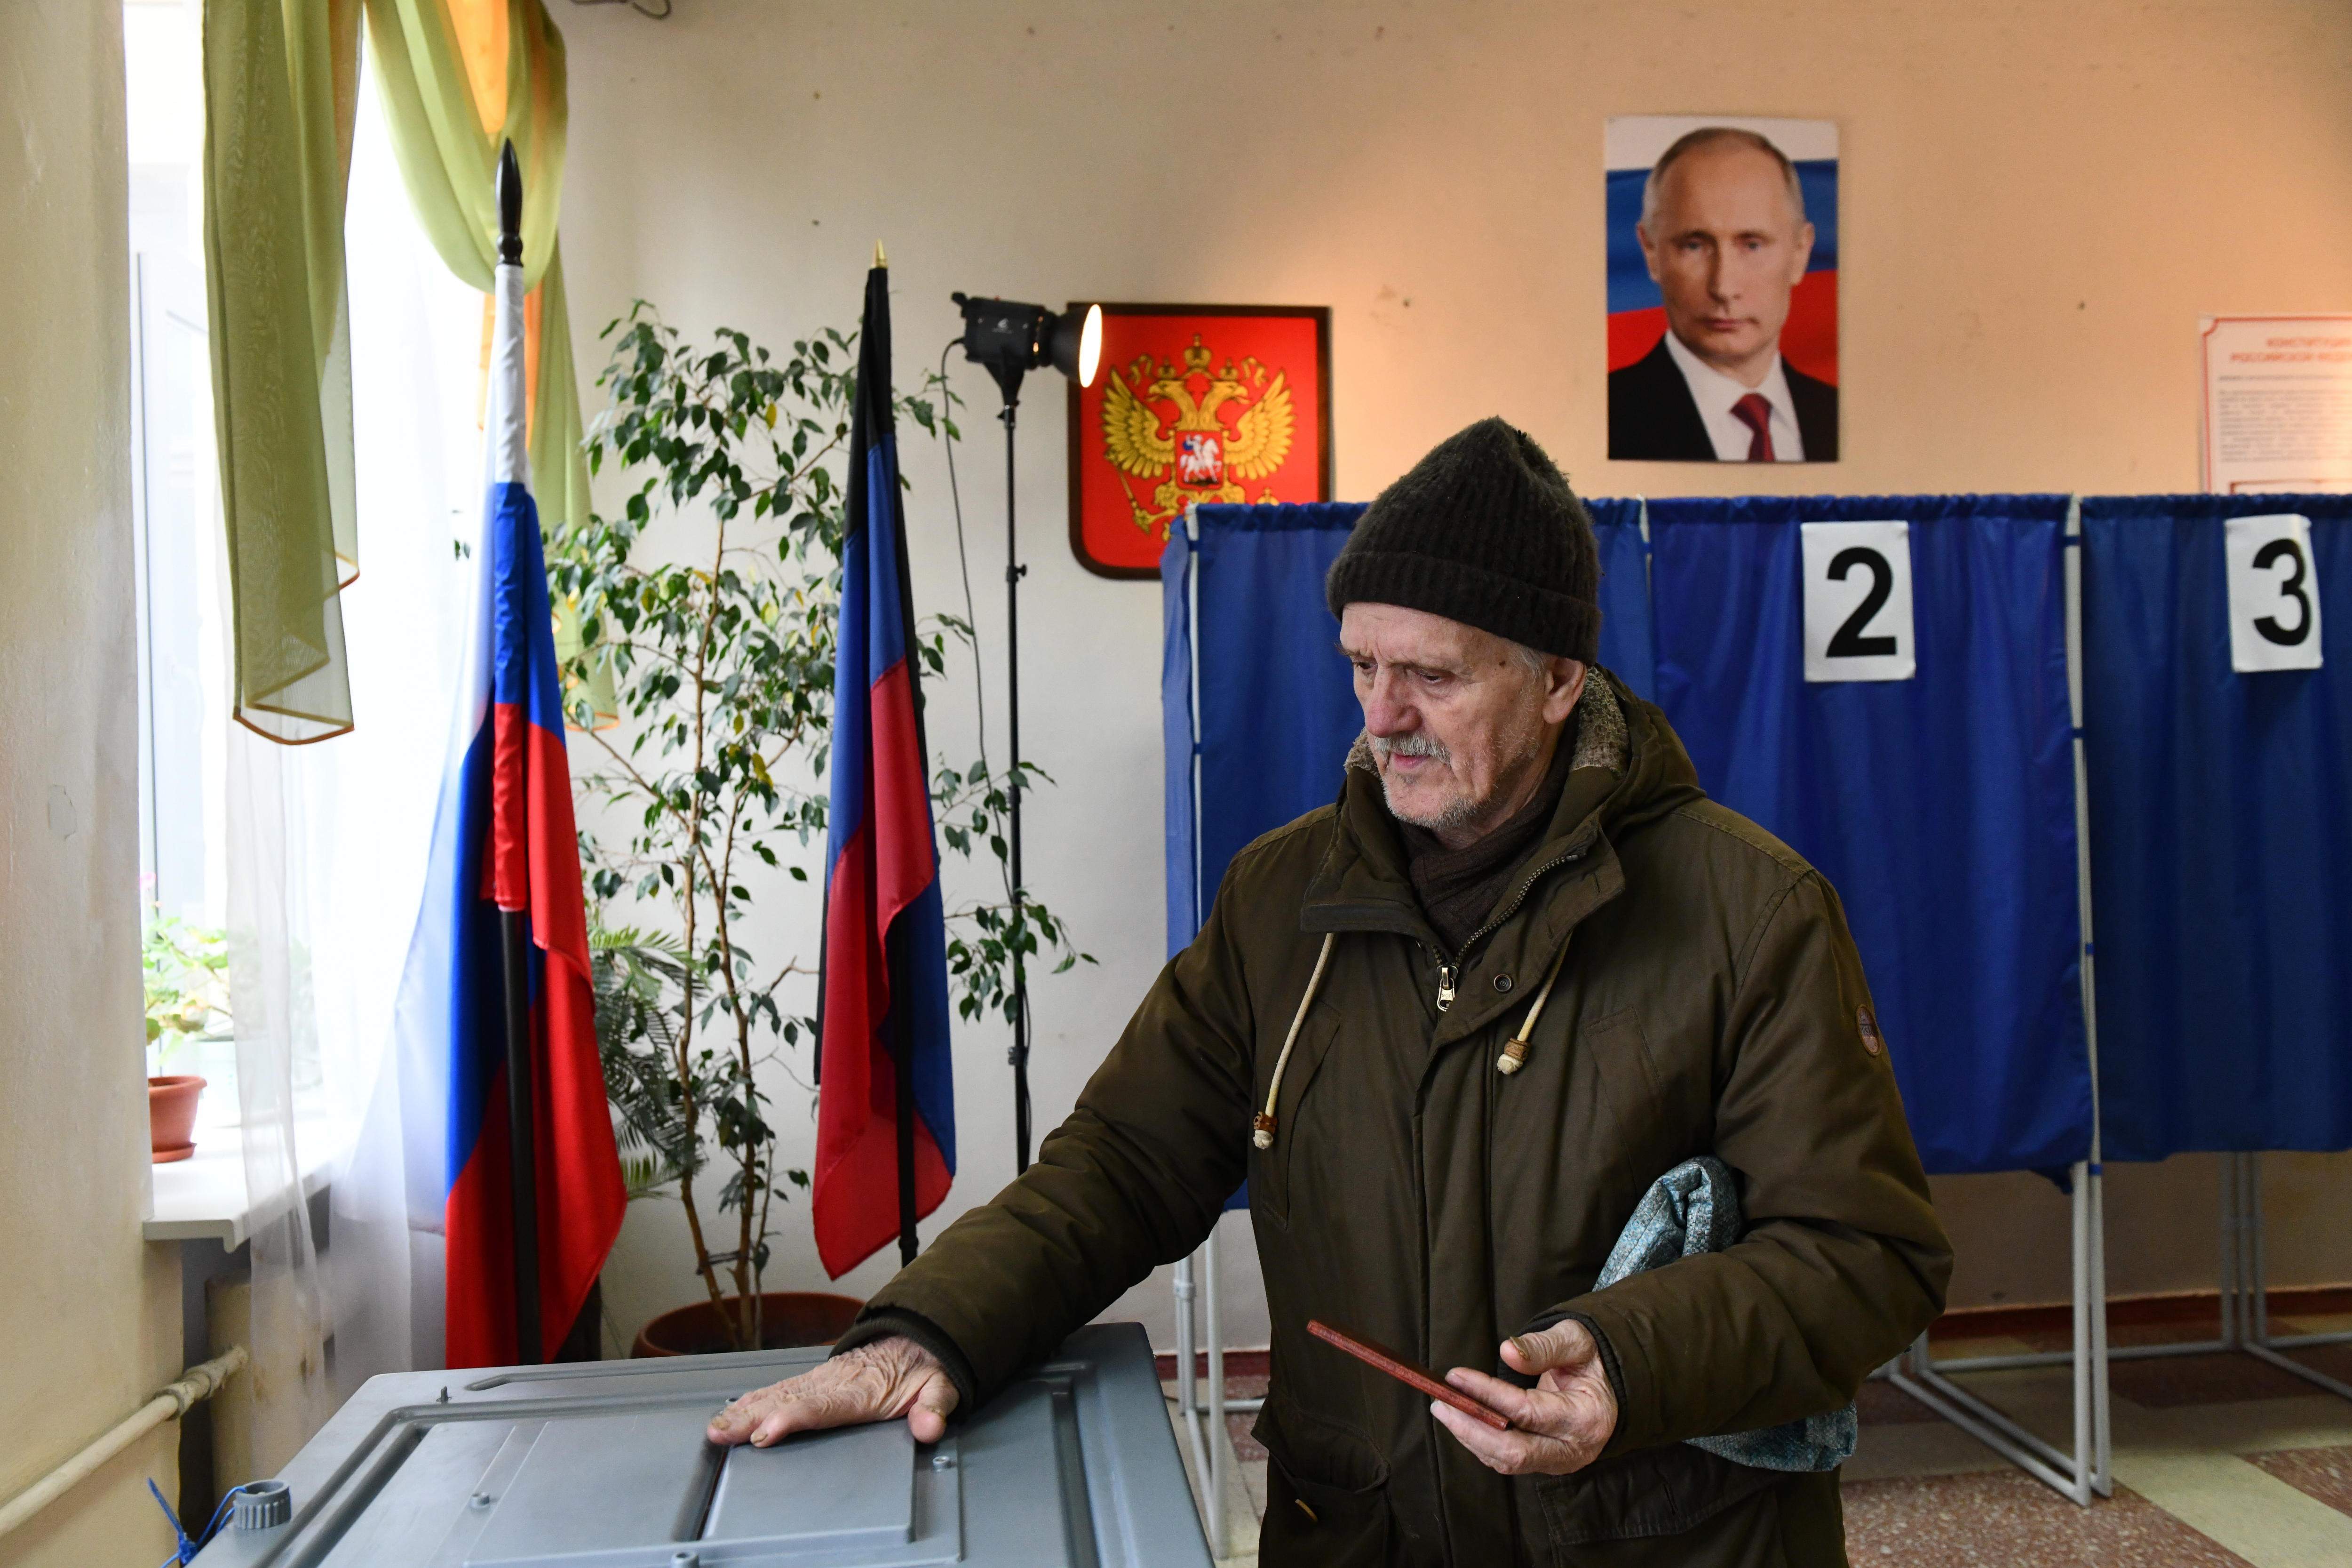 Tinta verda a les urnes i col·legis cremats: els russos mostren el desacord amb Putin a les eleccions